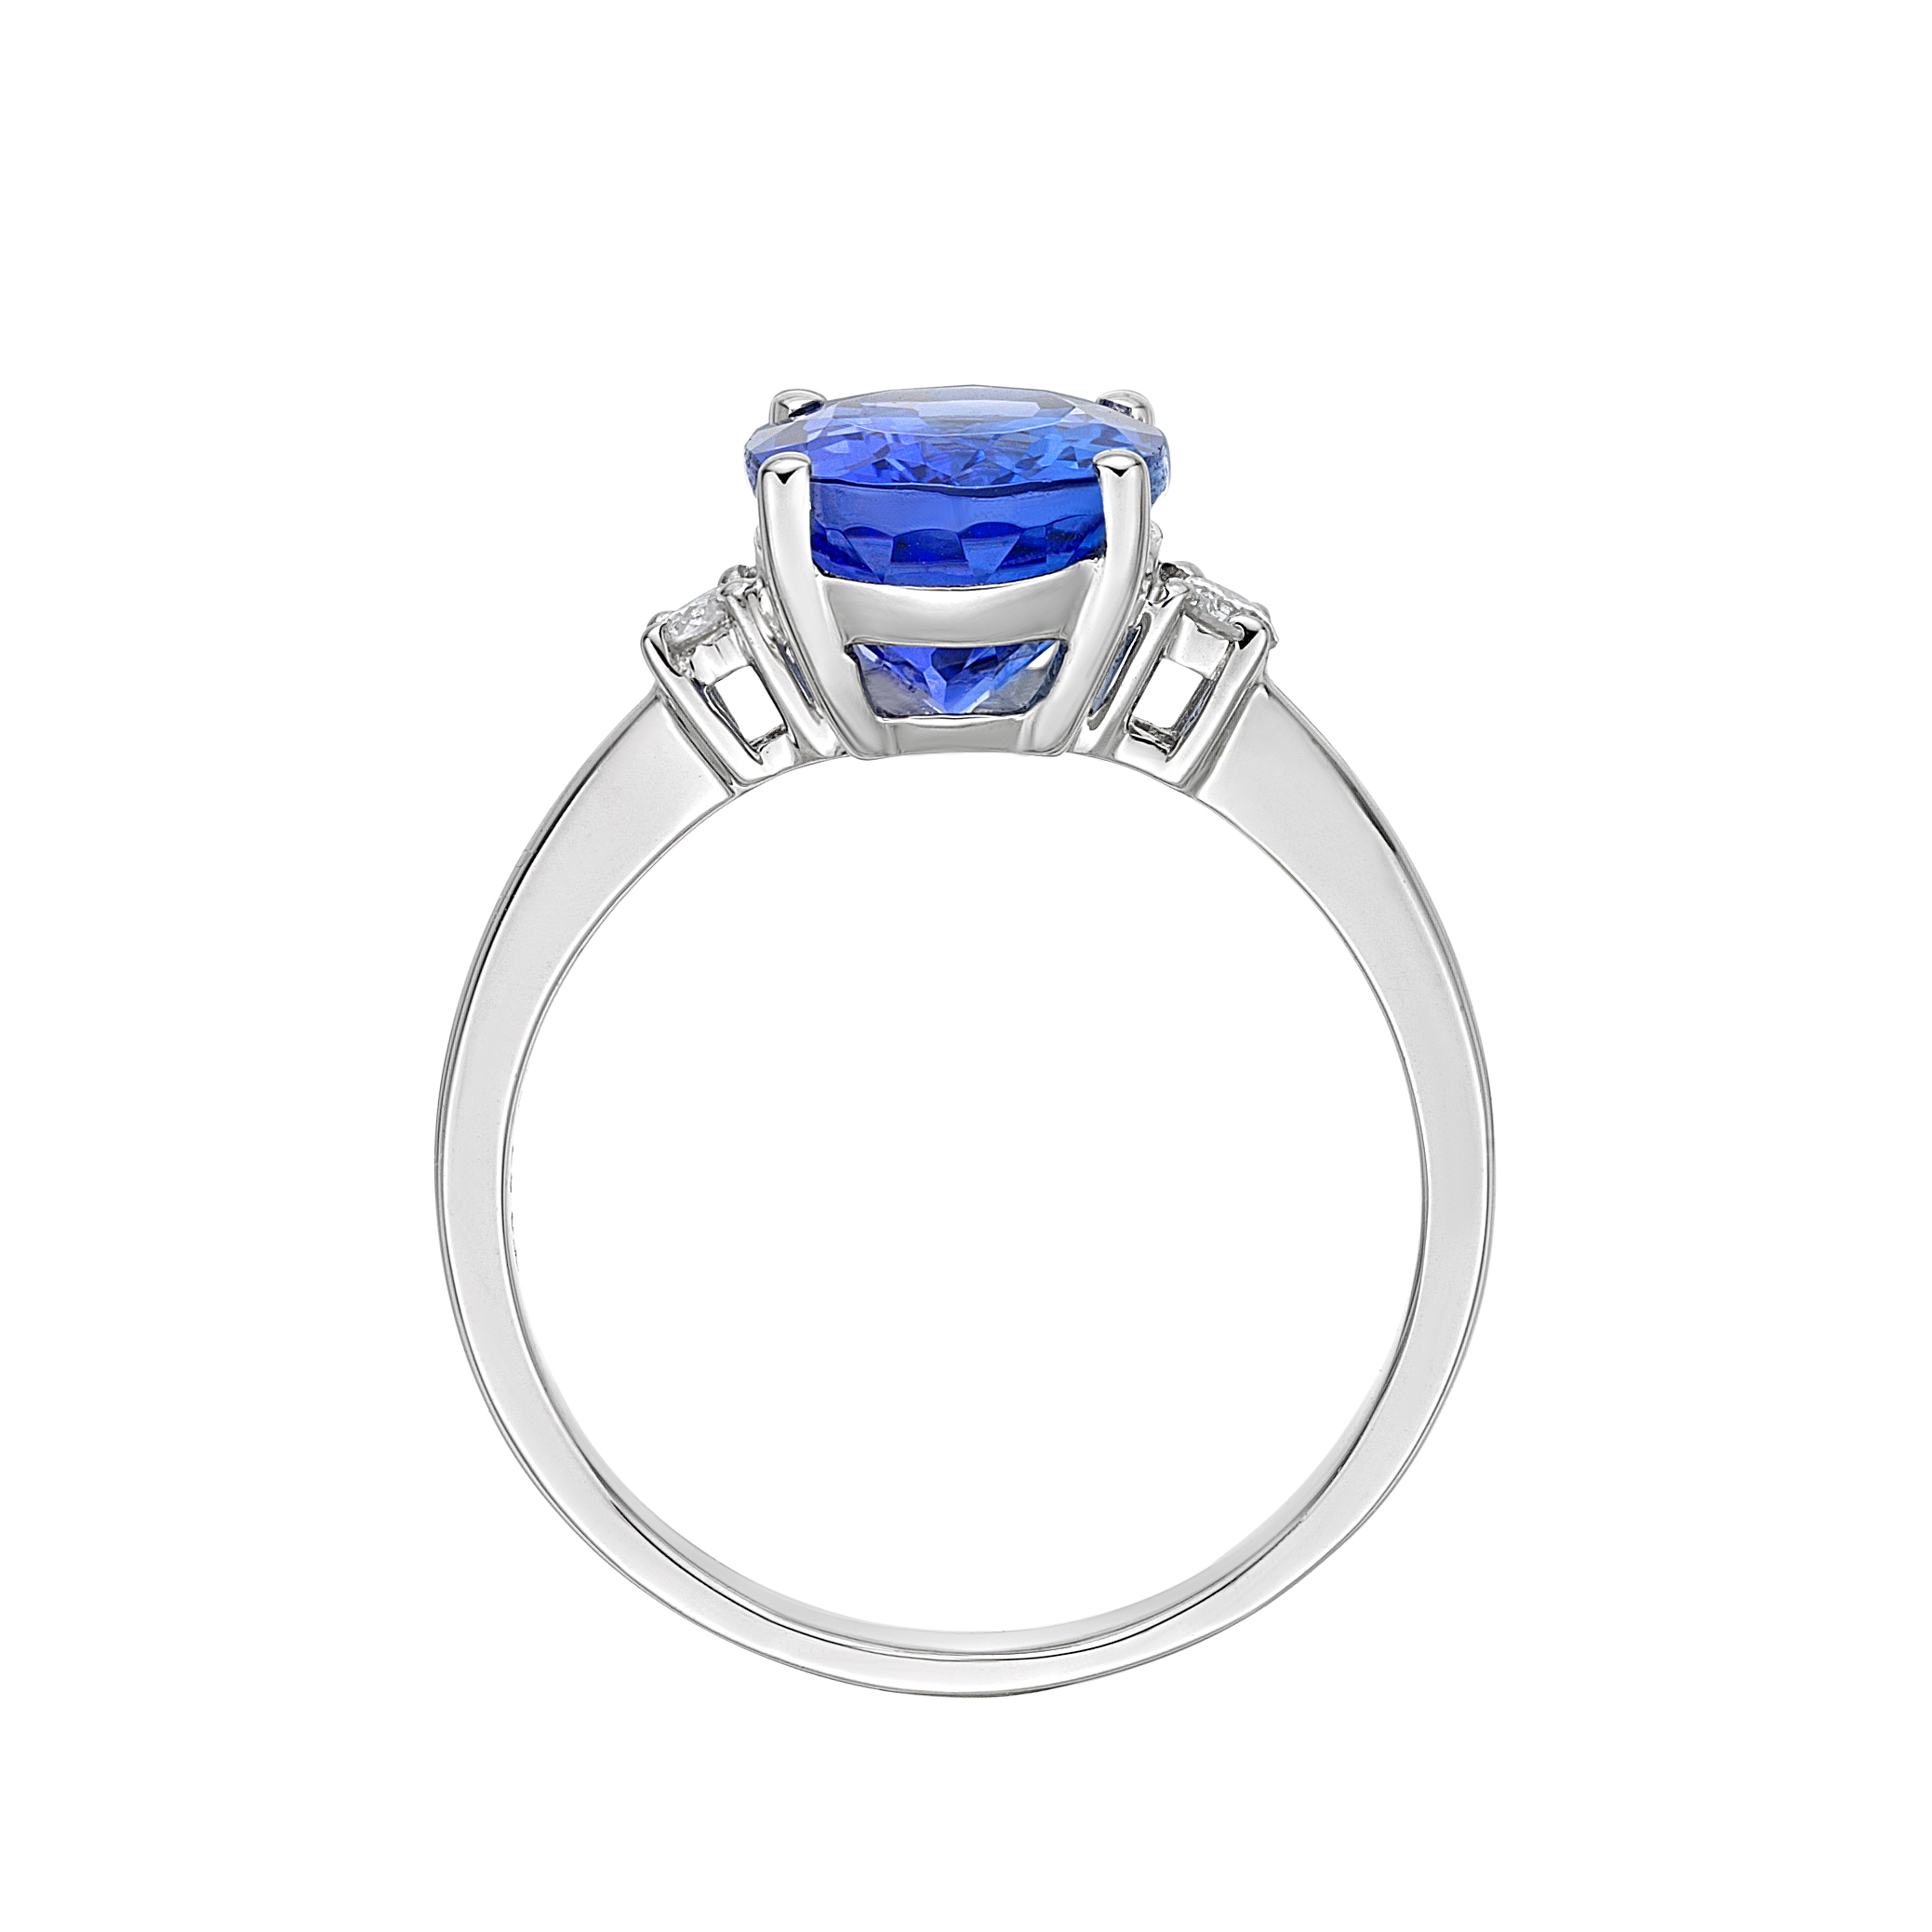 1.76 Carat Tanzanite & Diamond "Paris" Engagement Ring